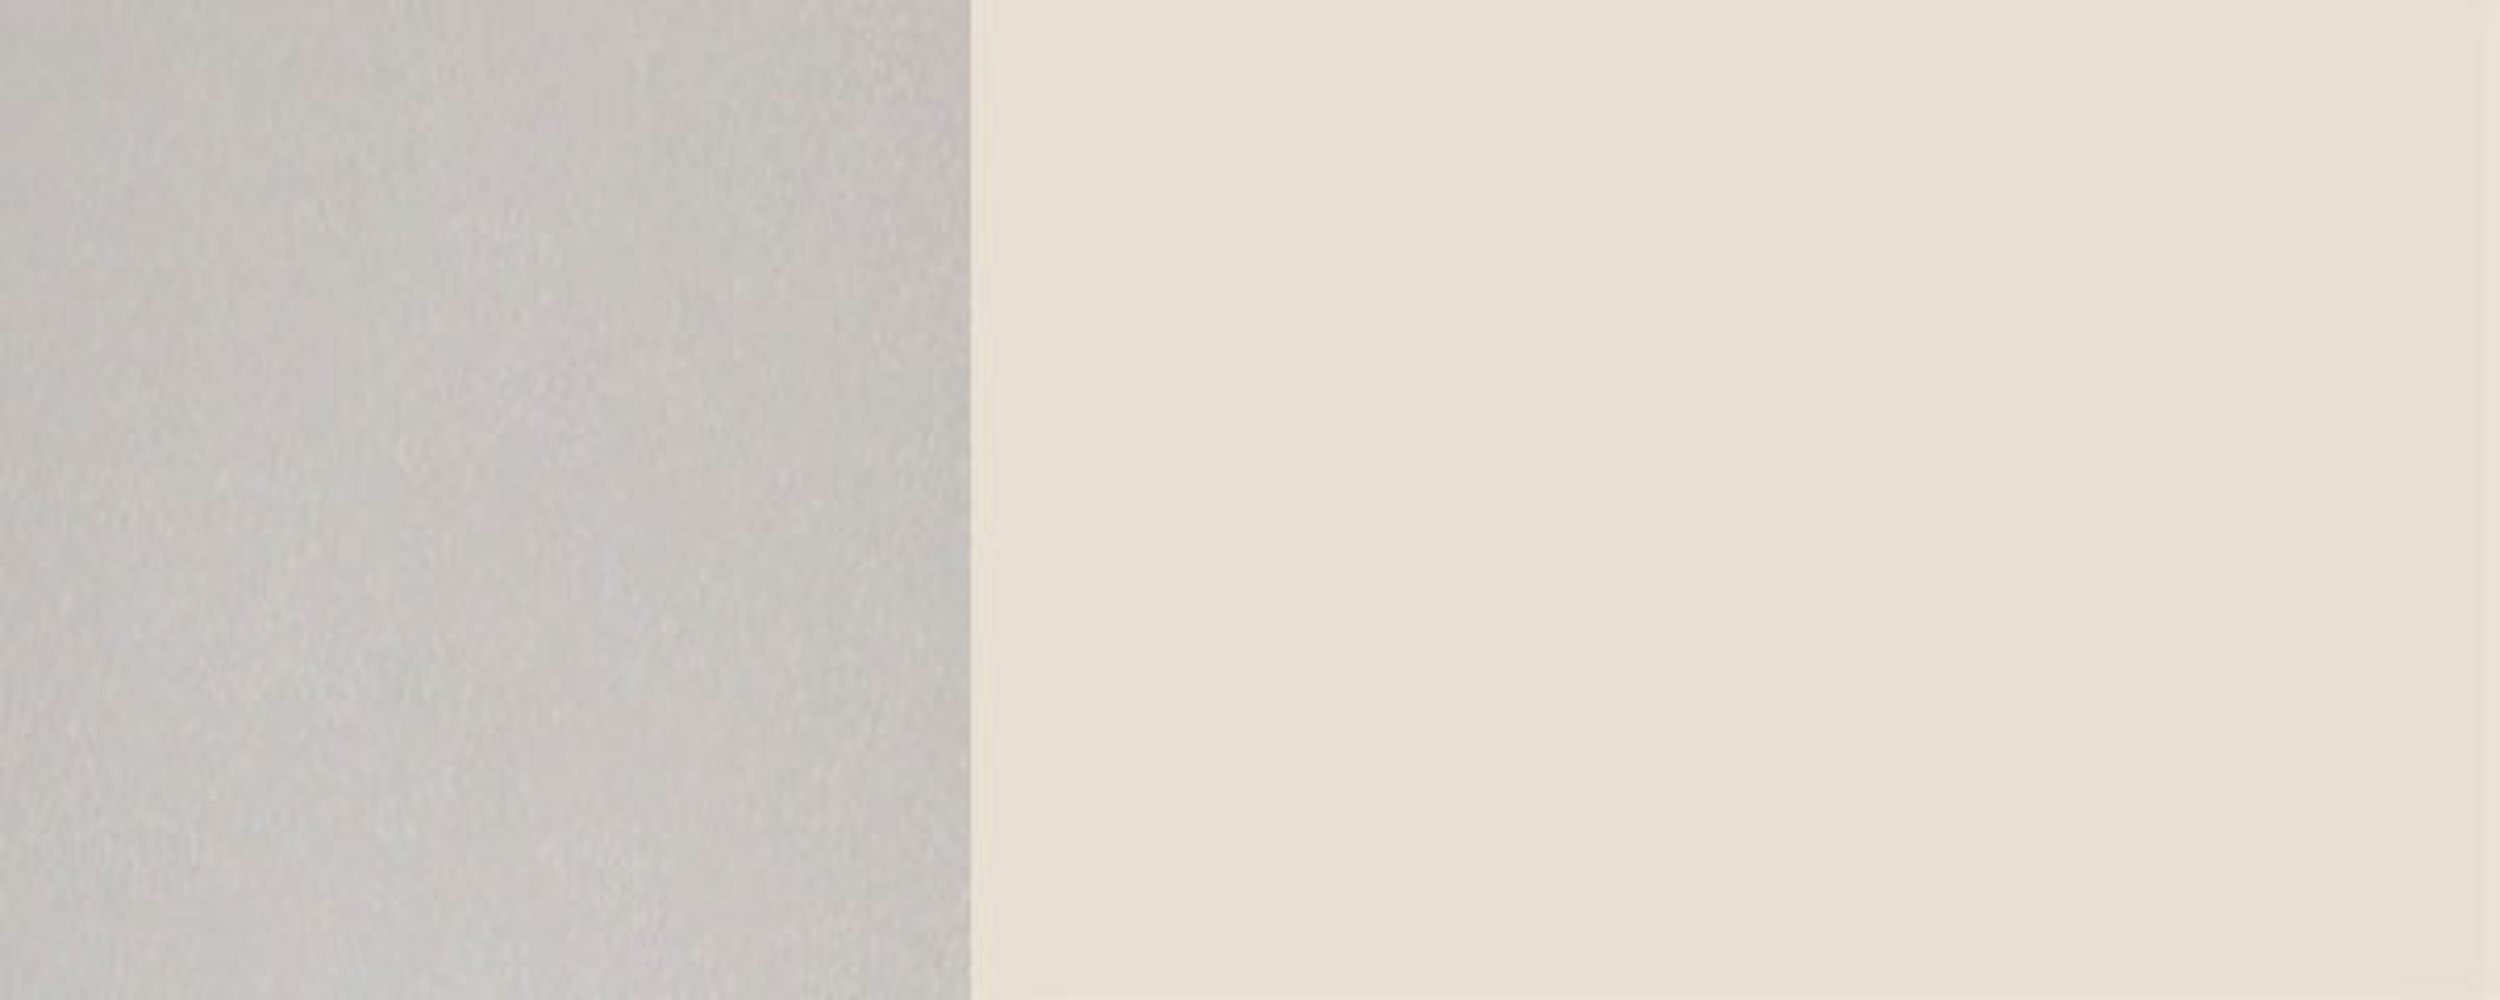 Feldmann-Wohnen Glashängeschrank Hochglanz und 60cm cremeweiß 9001 (Florence) RAL wählbar Ausführung 1-türig Korpusfarbe Florence grifflos Front